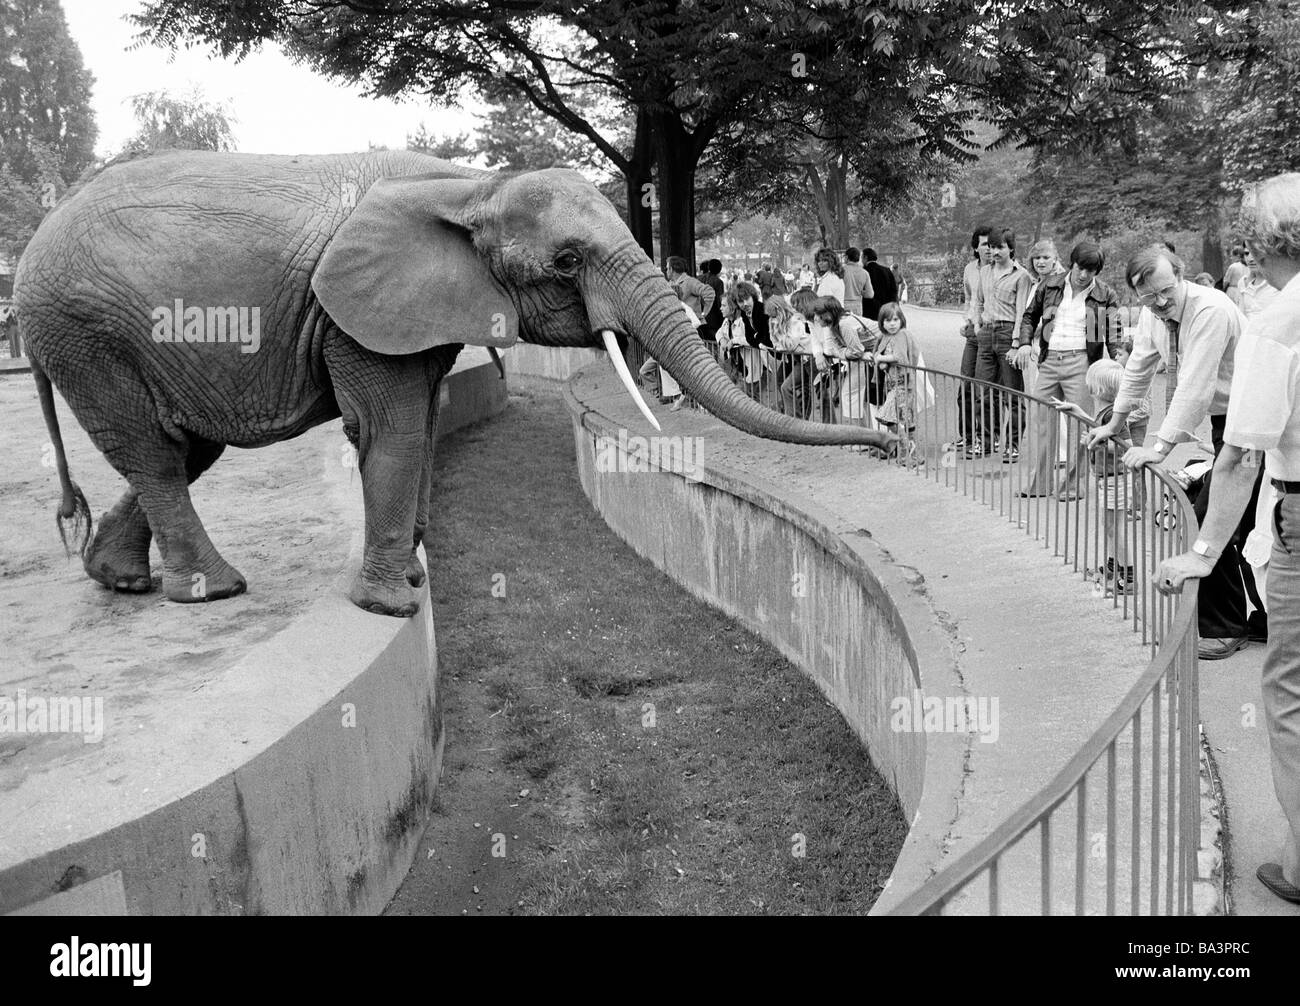 Achtziger Jahre, schwarz / weiß Foto, Mensch und Tier, Elefanten im Zoo Duisburg streckt seinen Rüssel um Nahrung von den Besuchern zu erhalten, Elefanten und Besucher sind getrennt durch einen breiten Graben, Afrikanischer Elefant Loxodonta Africana, D-Duisburg, Rhein, Ruhrgebiet, Nordrhein-Westfalen Stockfoto